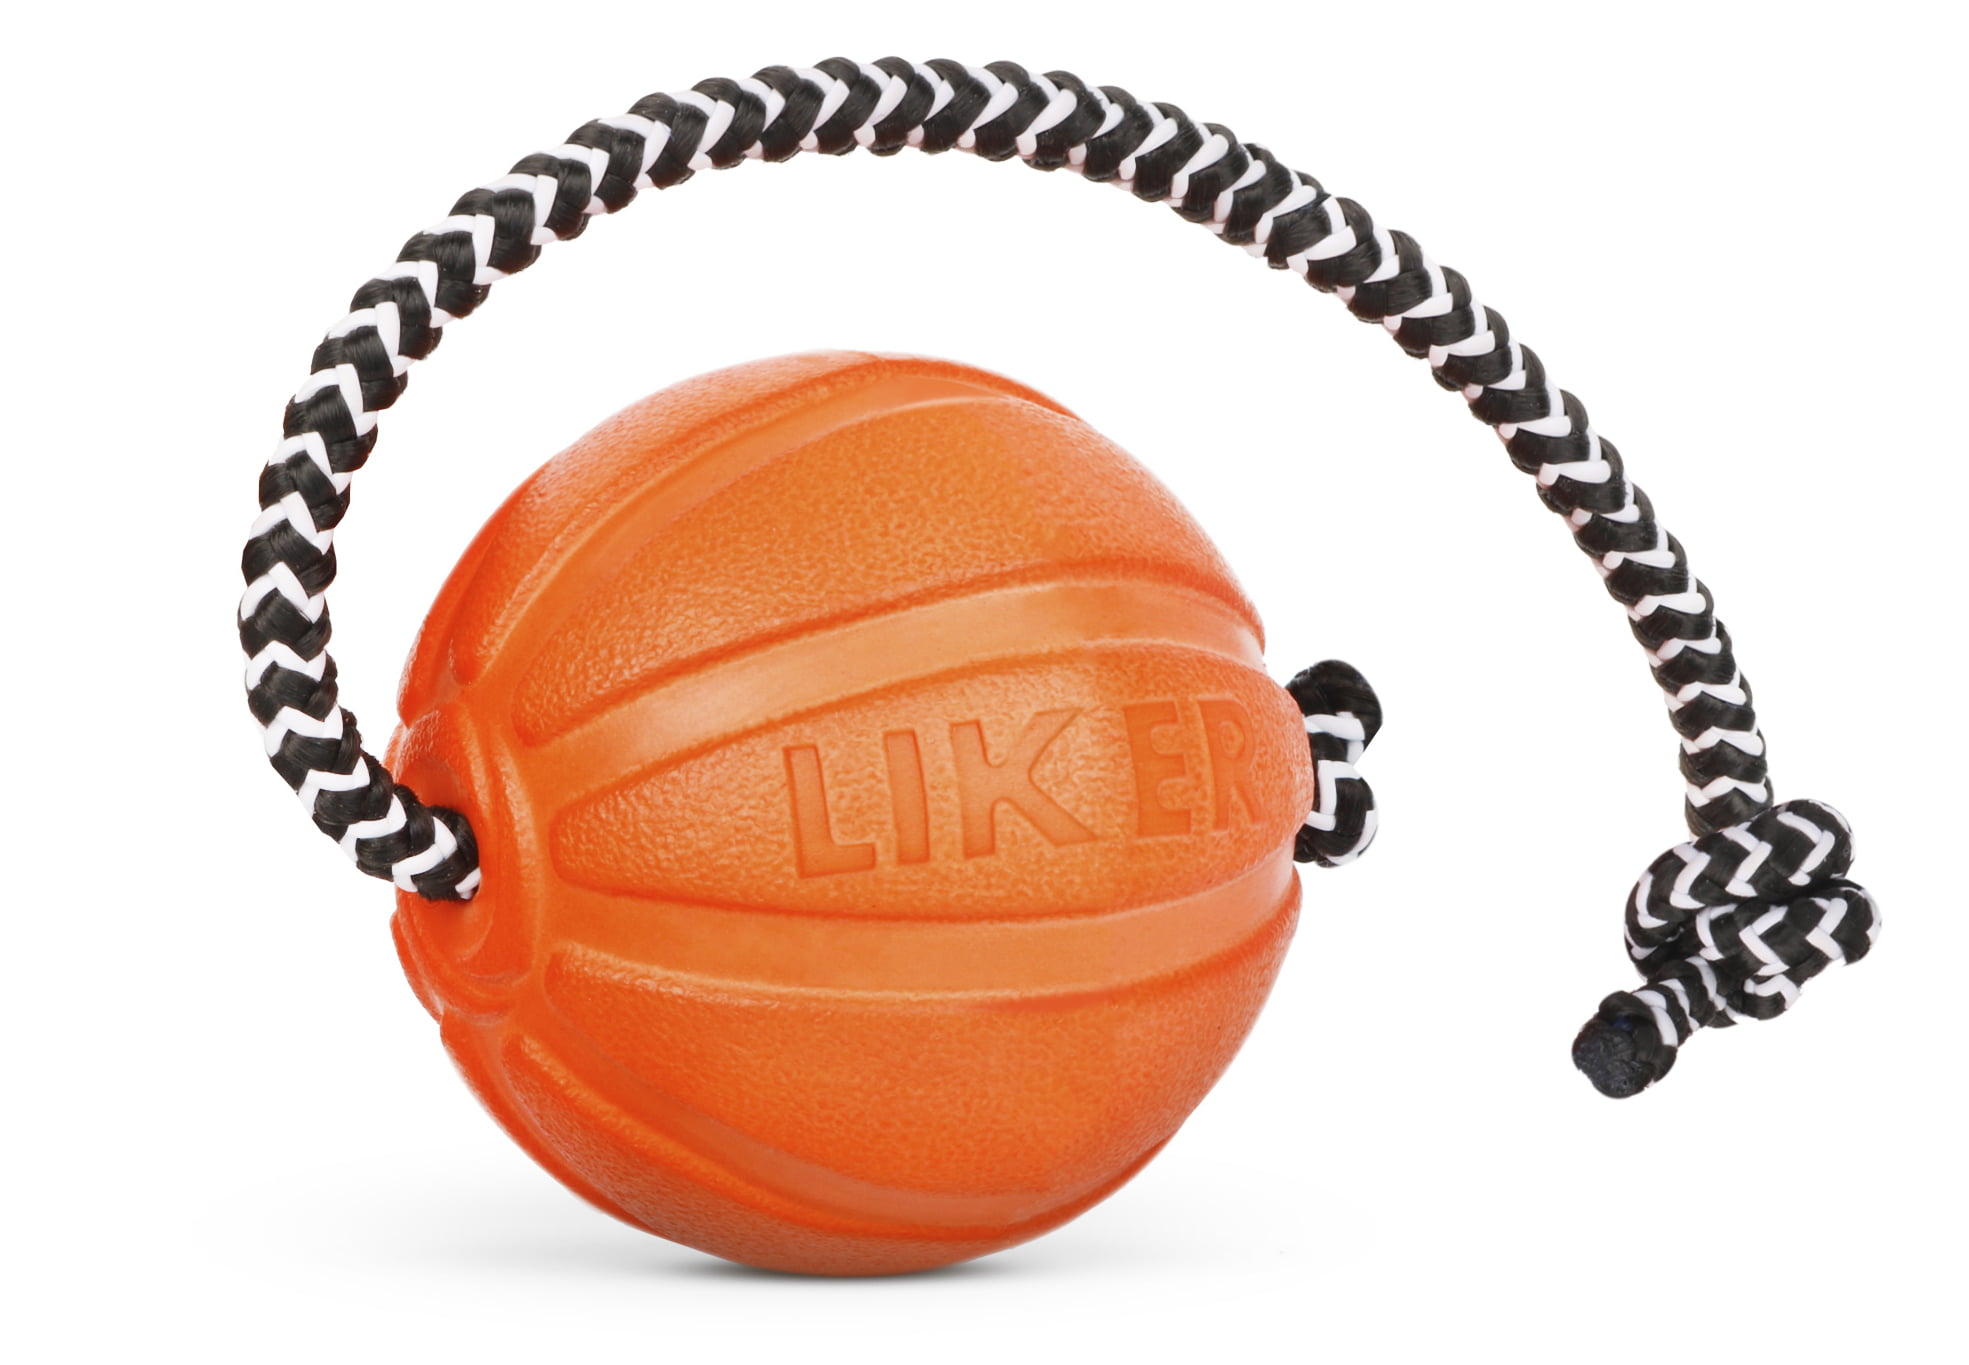 Мячик LIKER Cord 5 со шнуром для собак мелких пород